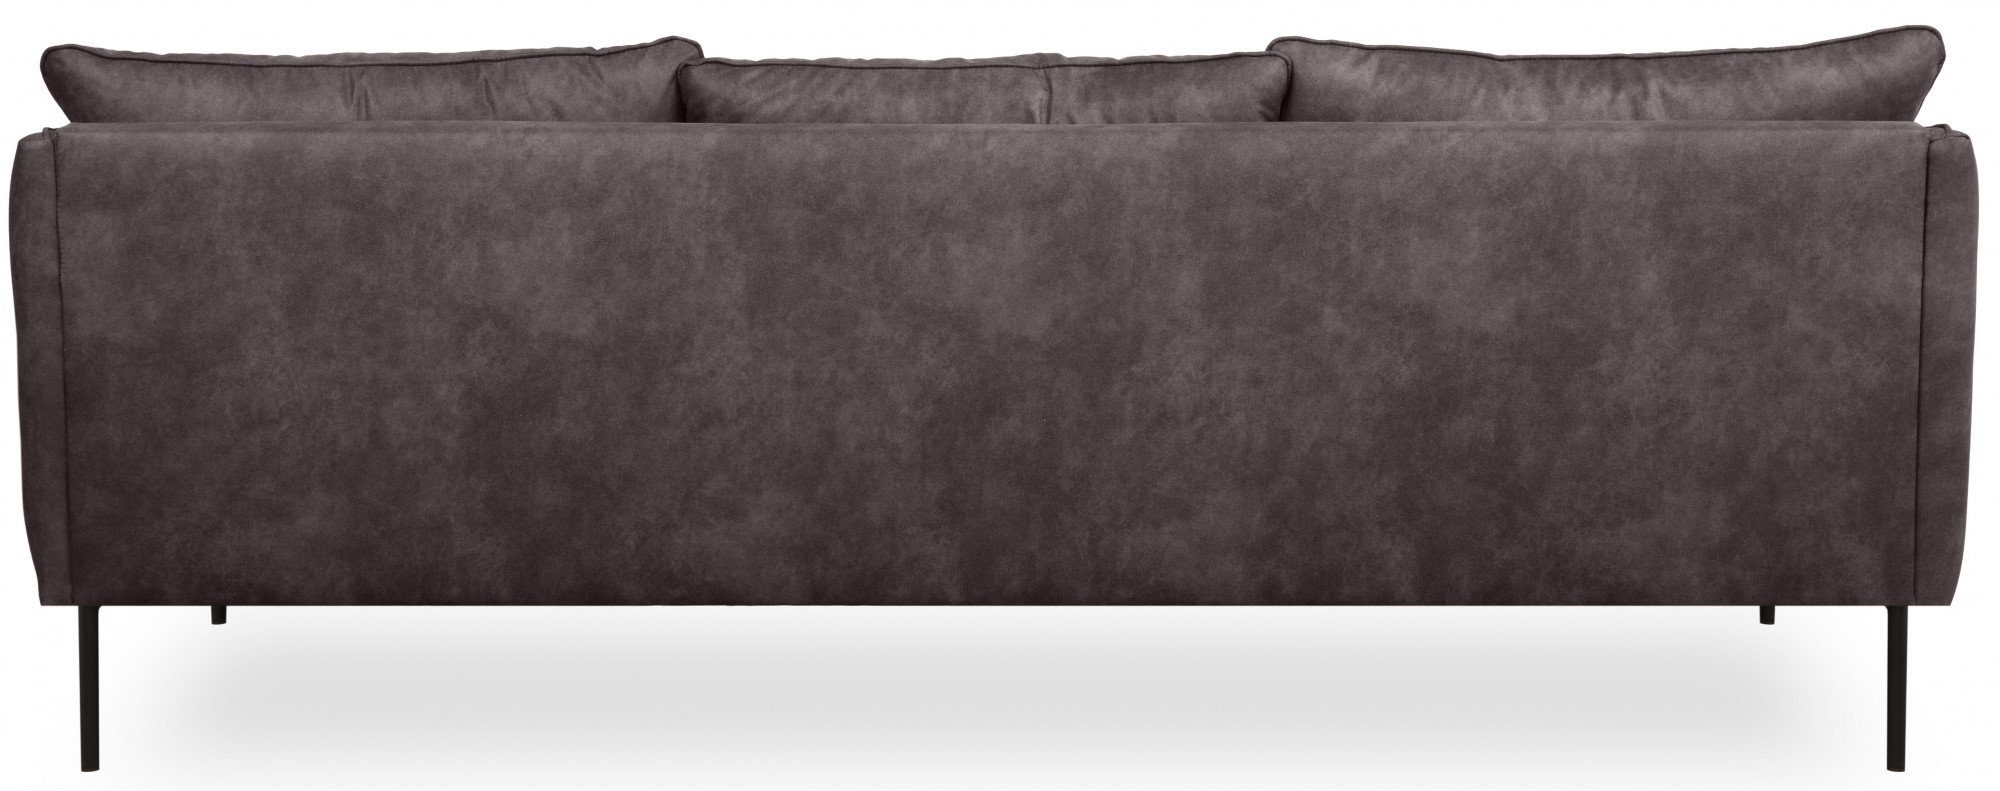 Design schlanken Metallfüßen andas Skalle, auf 3-Sitzer minimalistisches